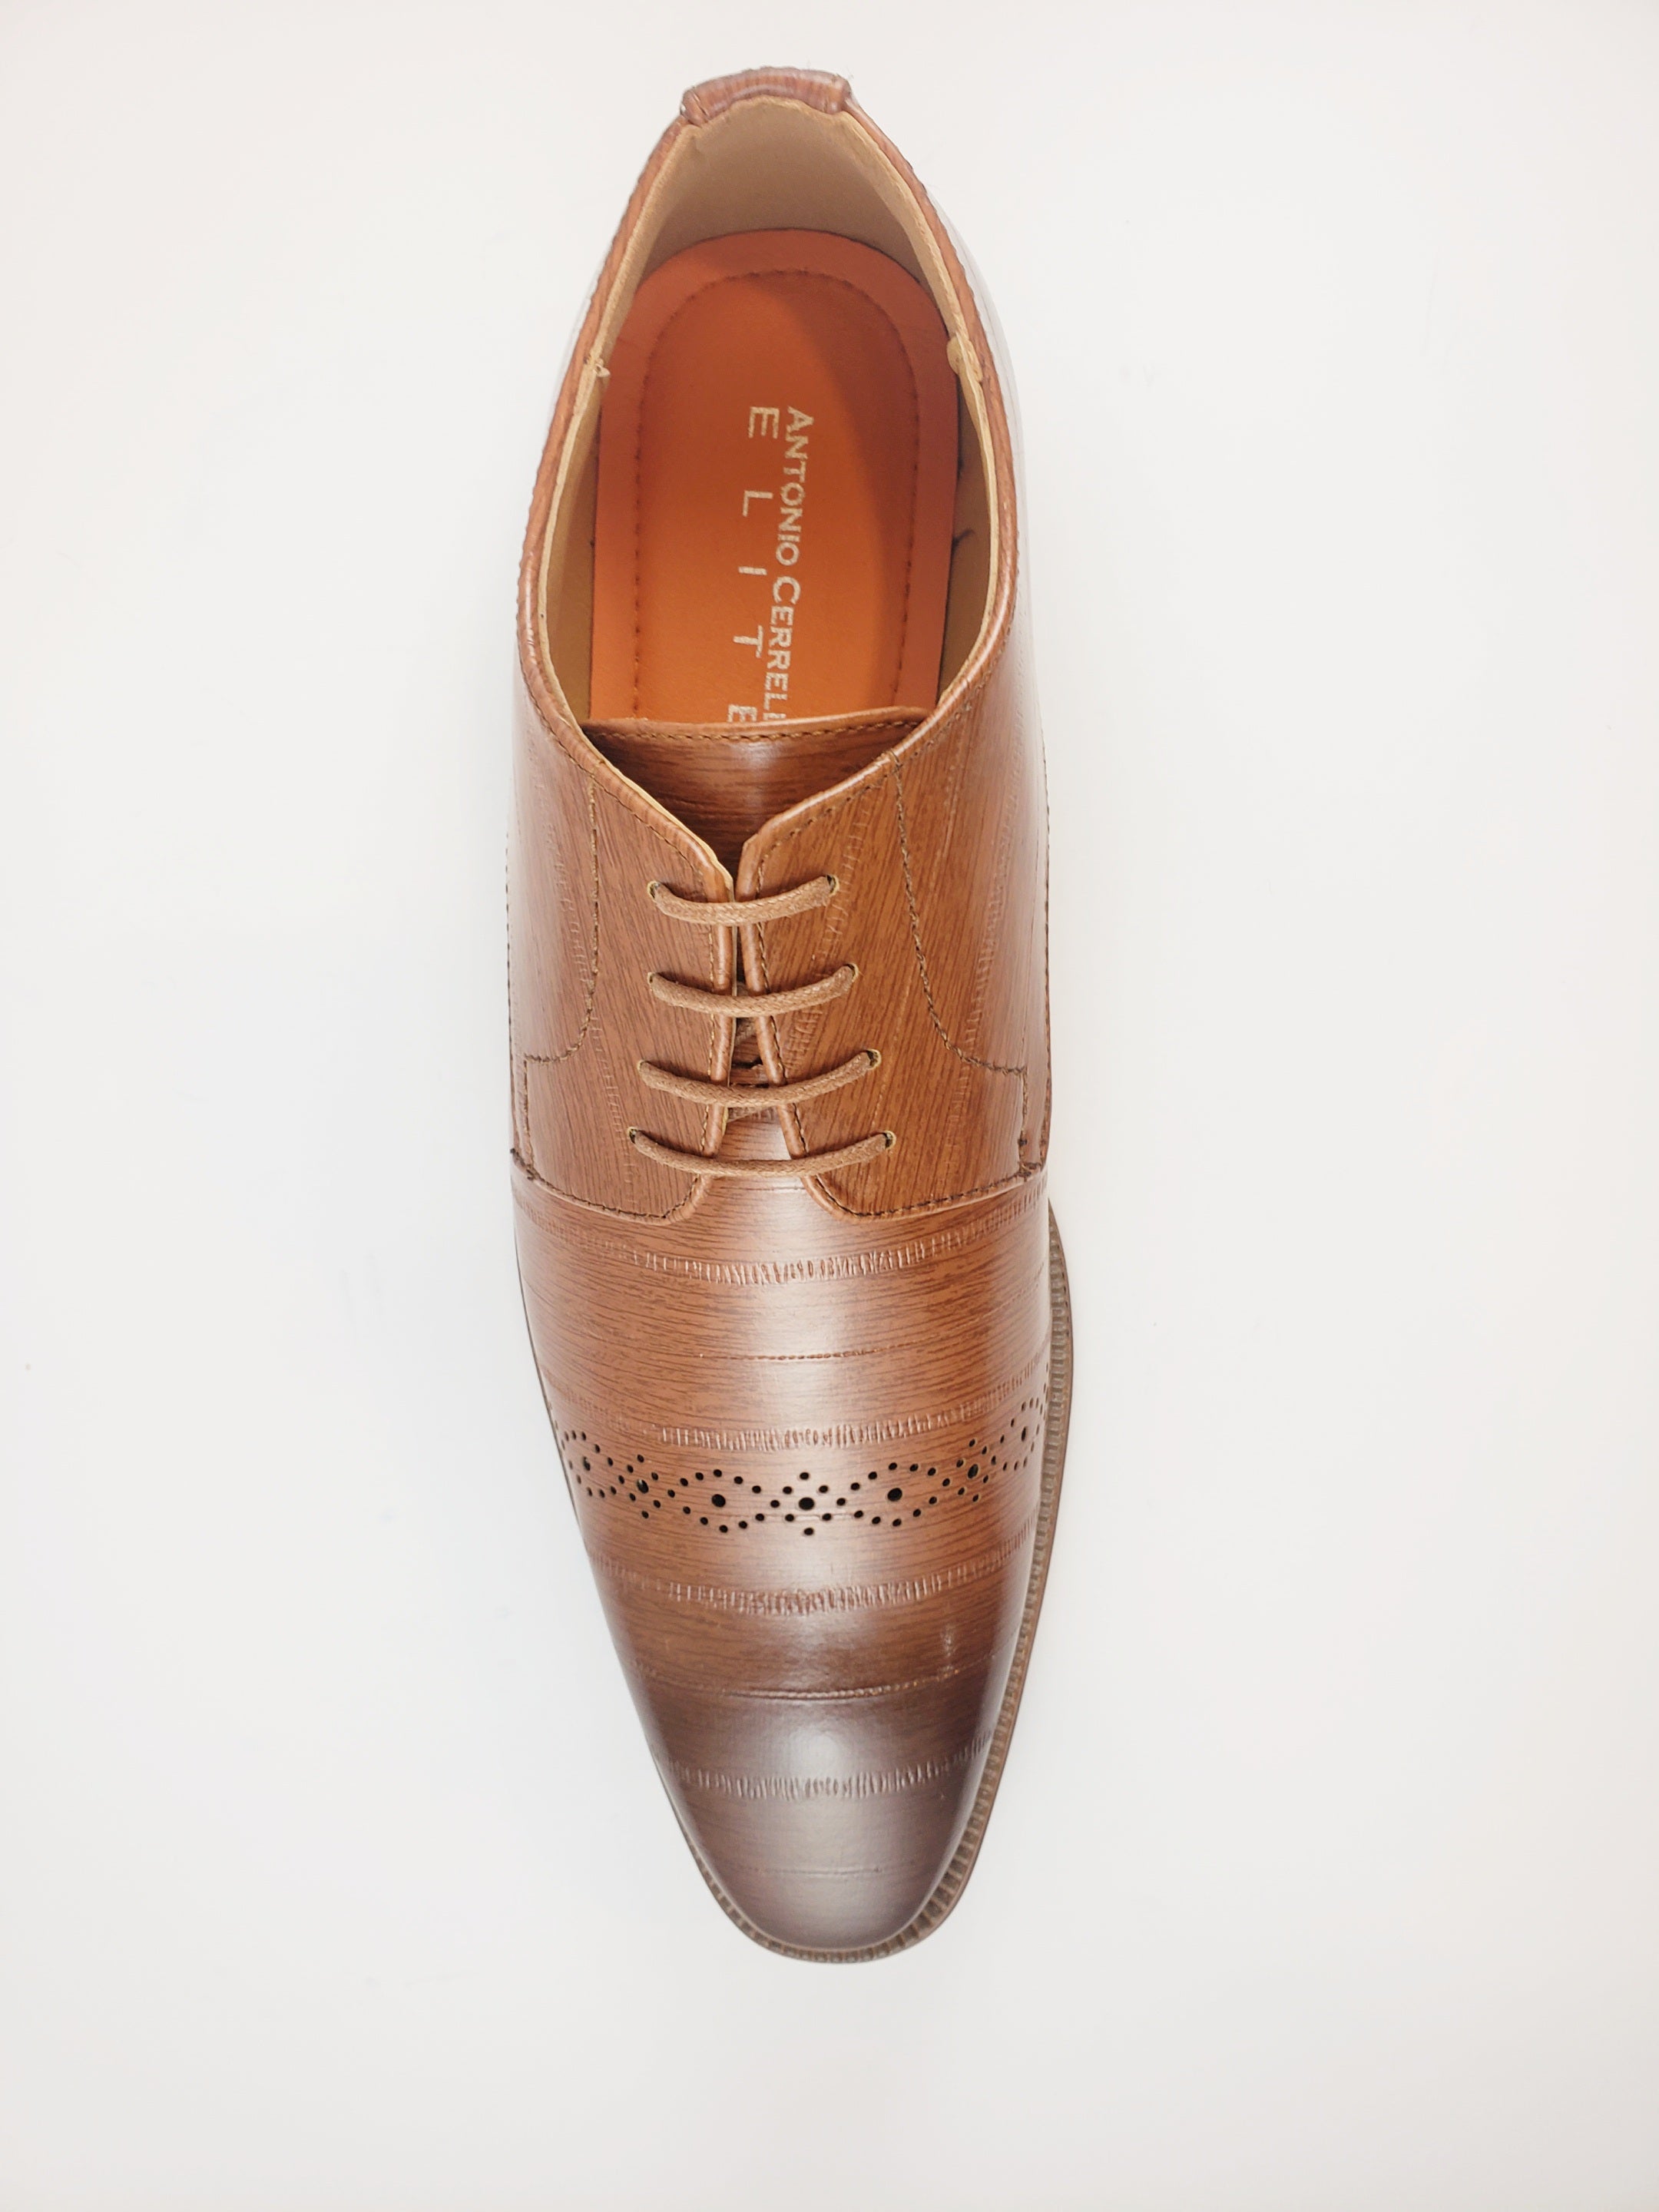 Antonio Cerrelli plain Toe Shoes